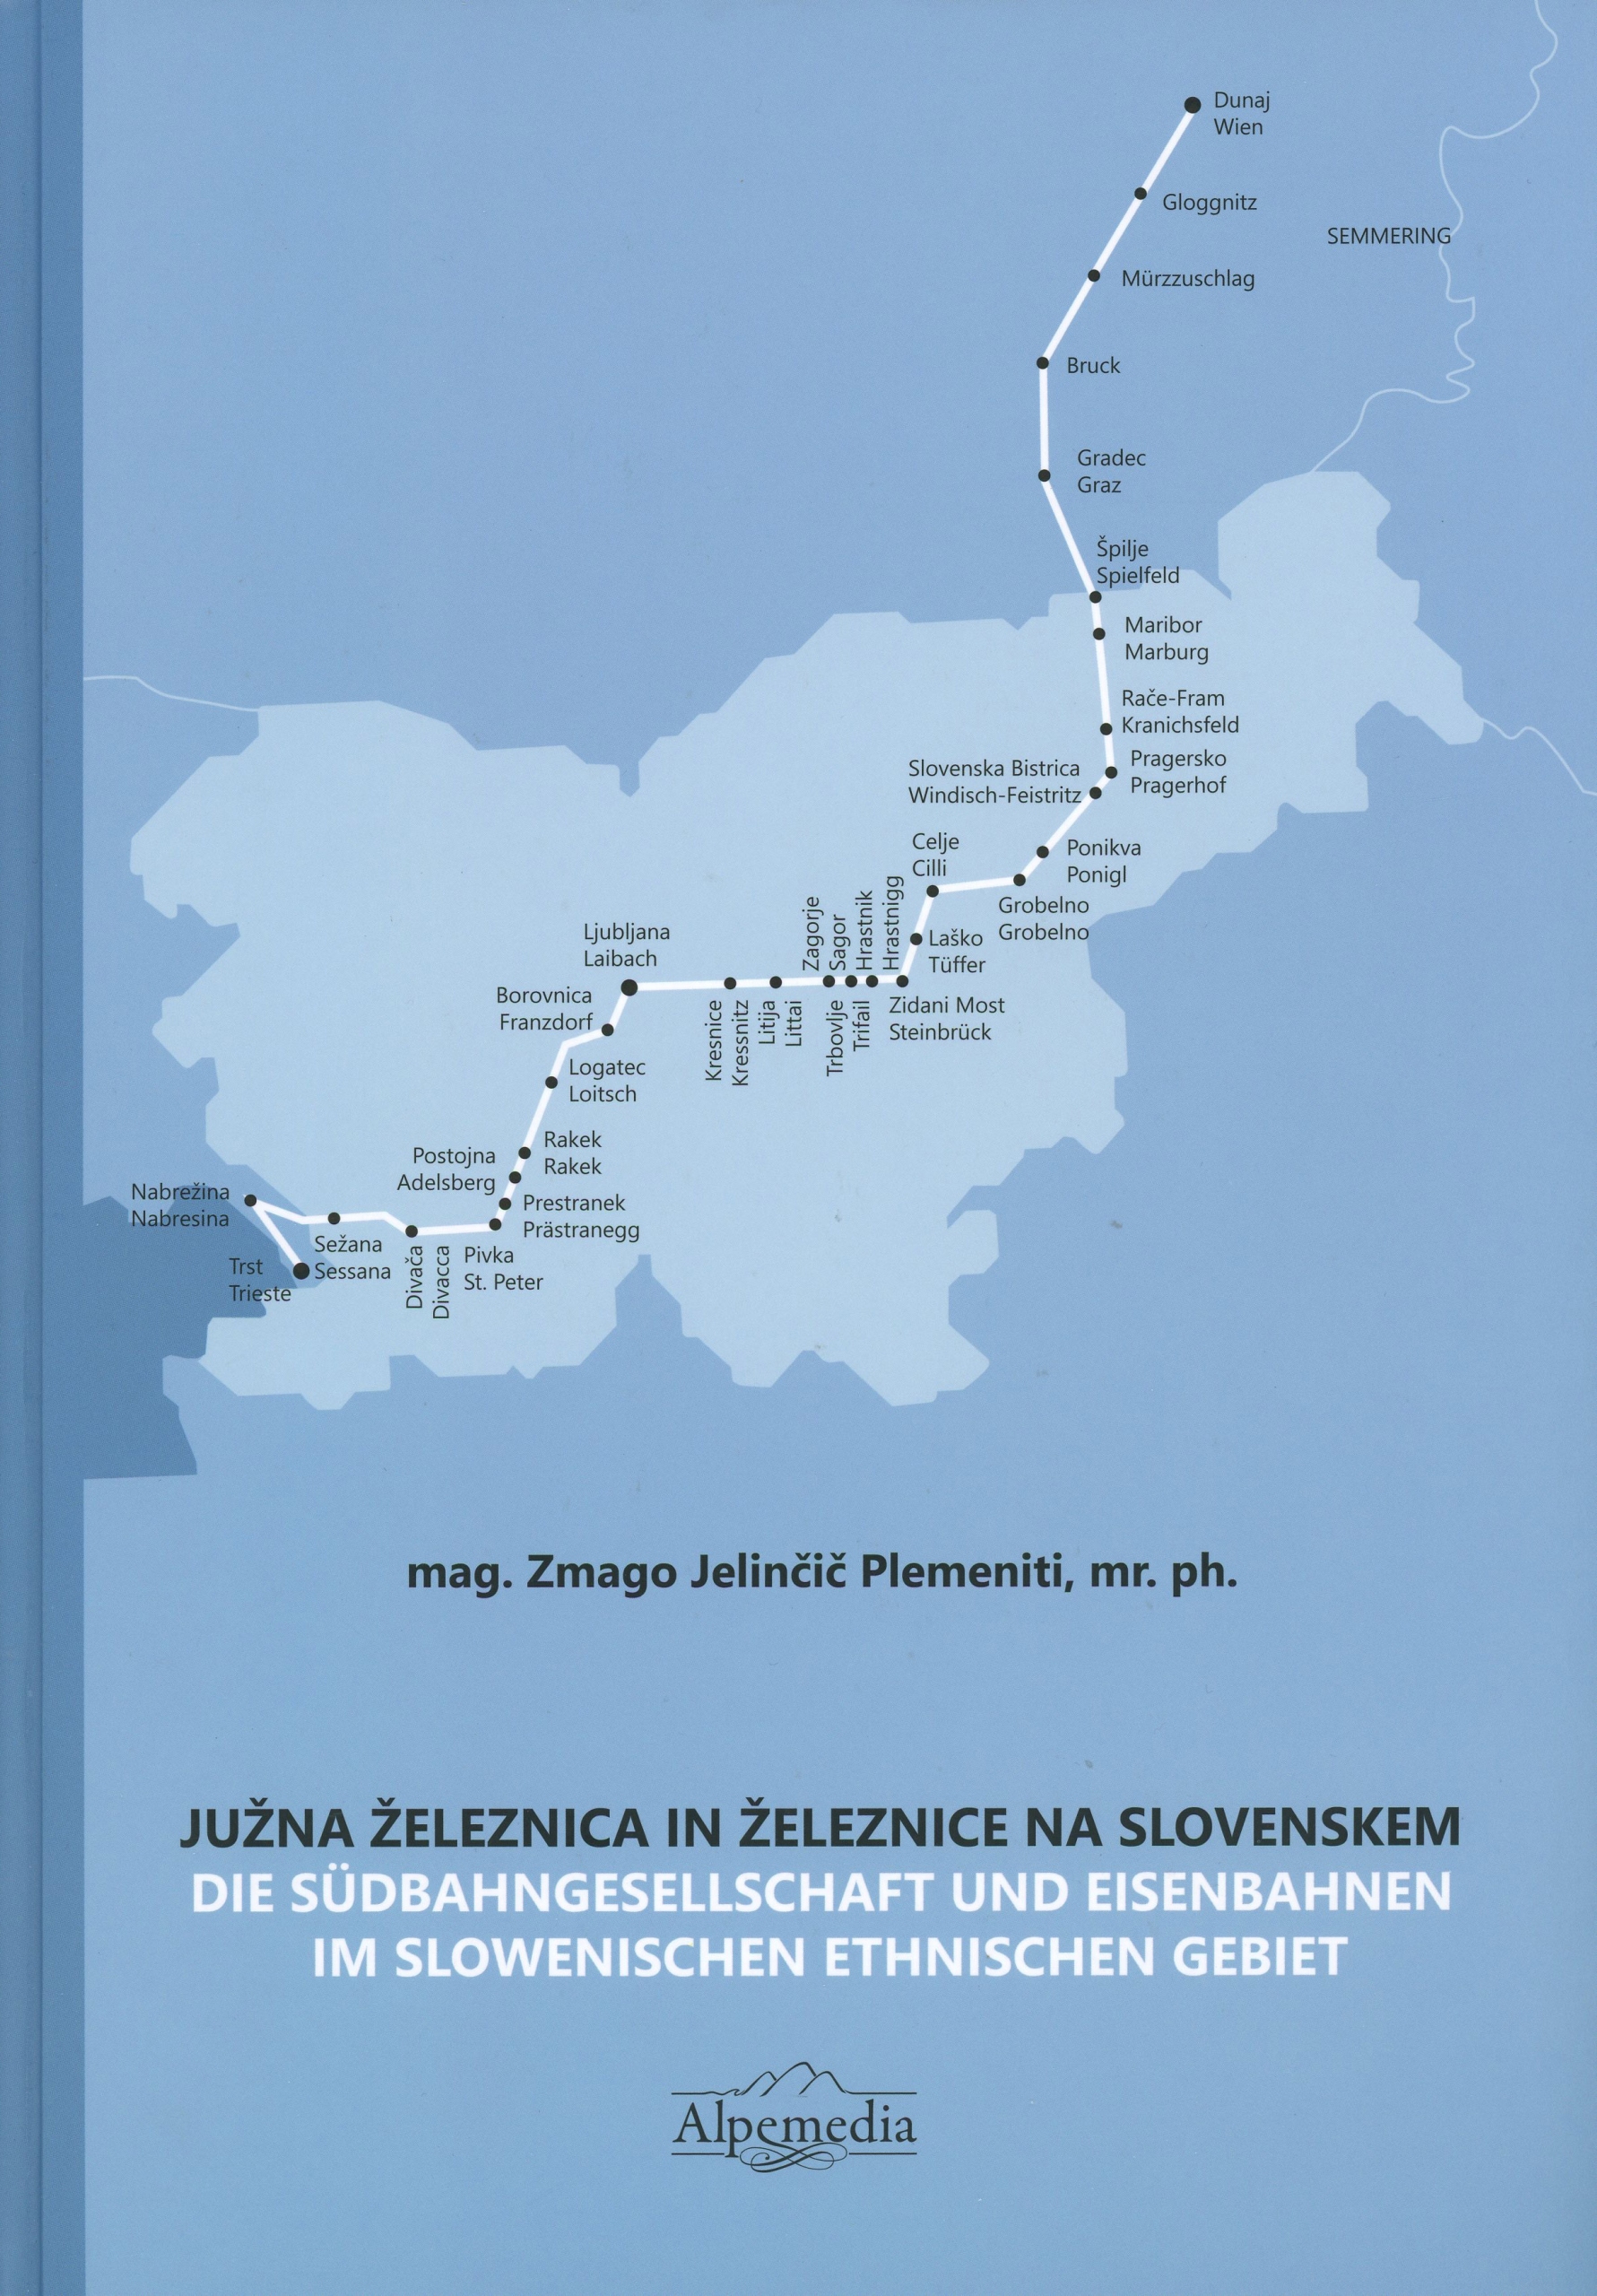 Južna železnica in železnice na Slovenskem